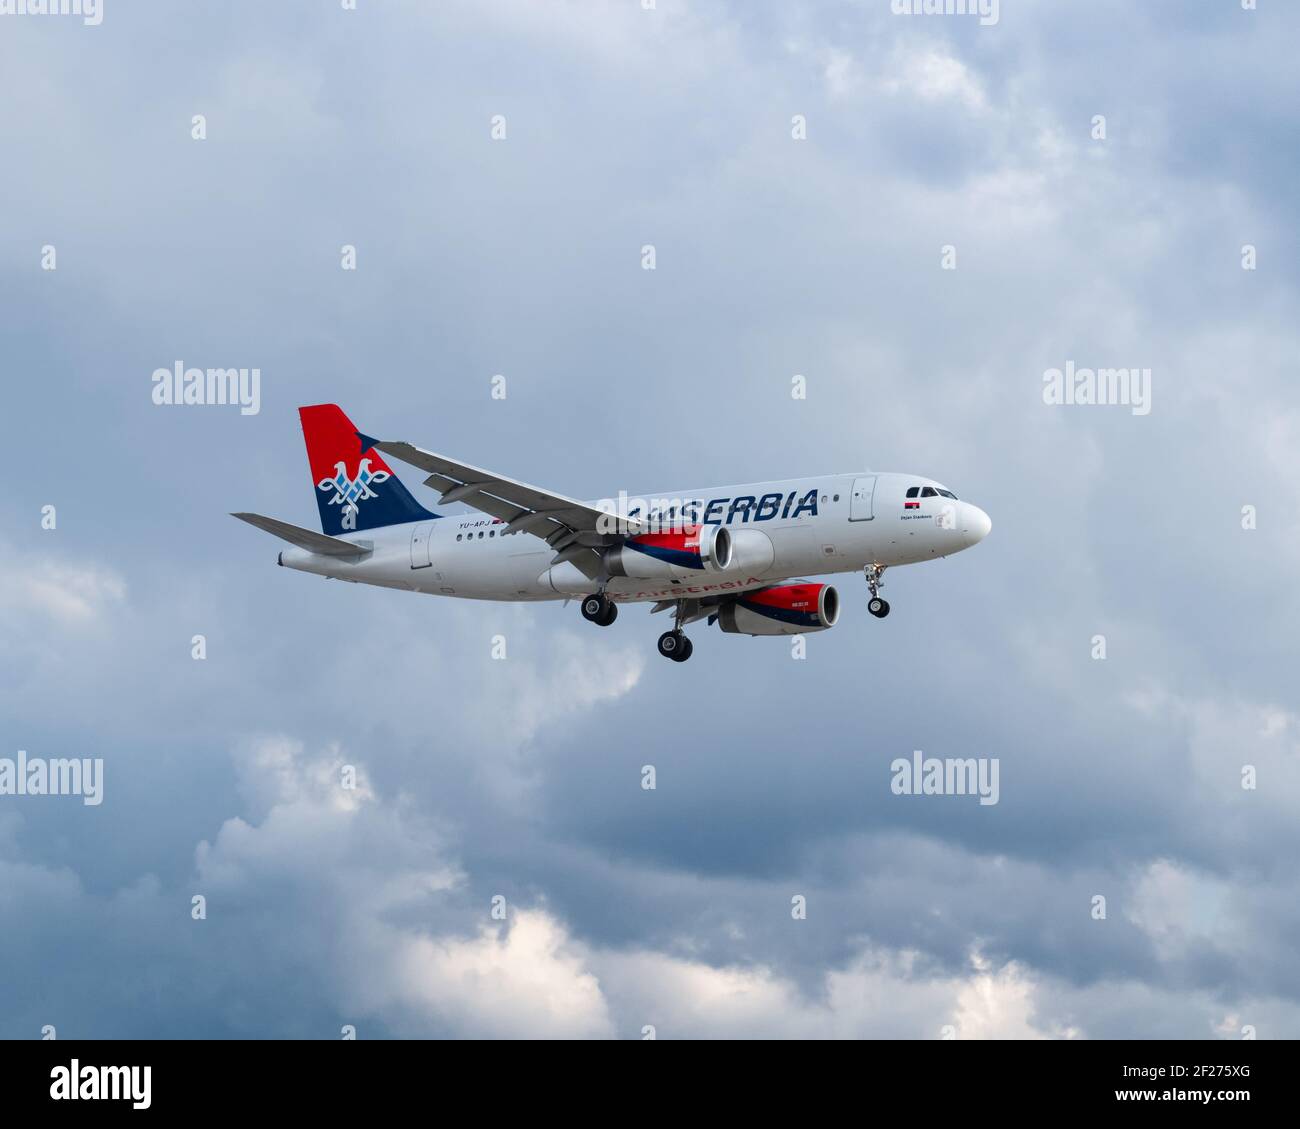 Londra, Aeroporto di Heathrow - Maggio 2019: Air Serbia, Airbus A319 che vola attraverso un cielo nuvoloso grigio all'avvicinamento finale con il suo approdo giù. Immagine Abd Foto Stock